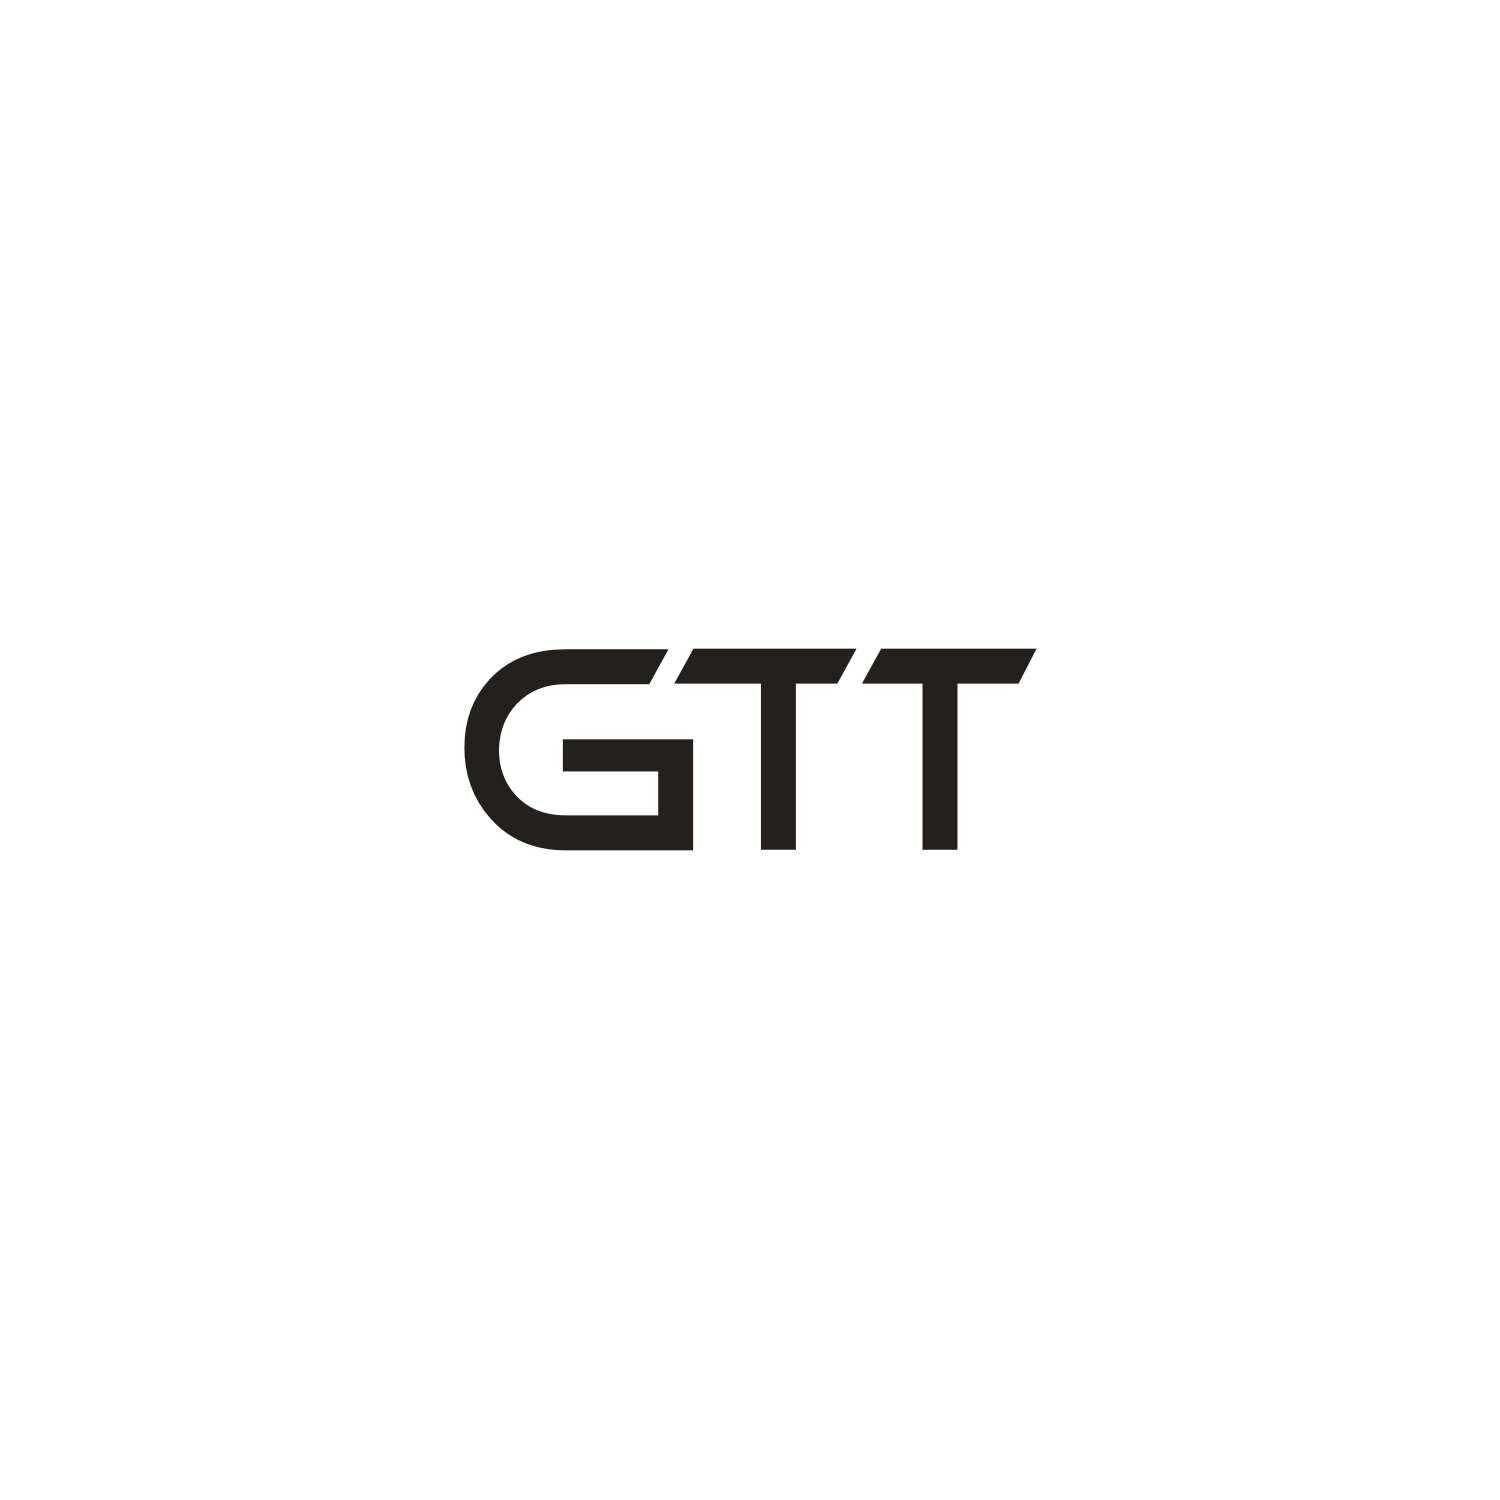 Gtt Logo - Modern, Professional Logo Design for GTT by Zzamiq | Design #19370889